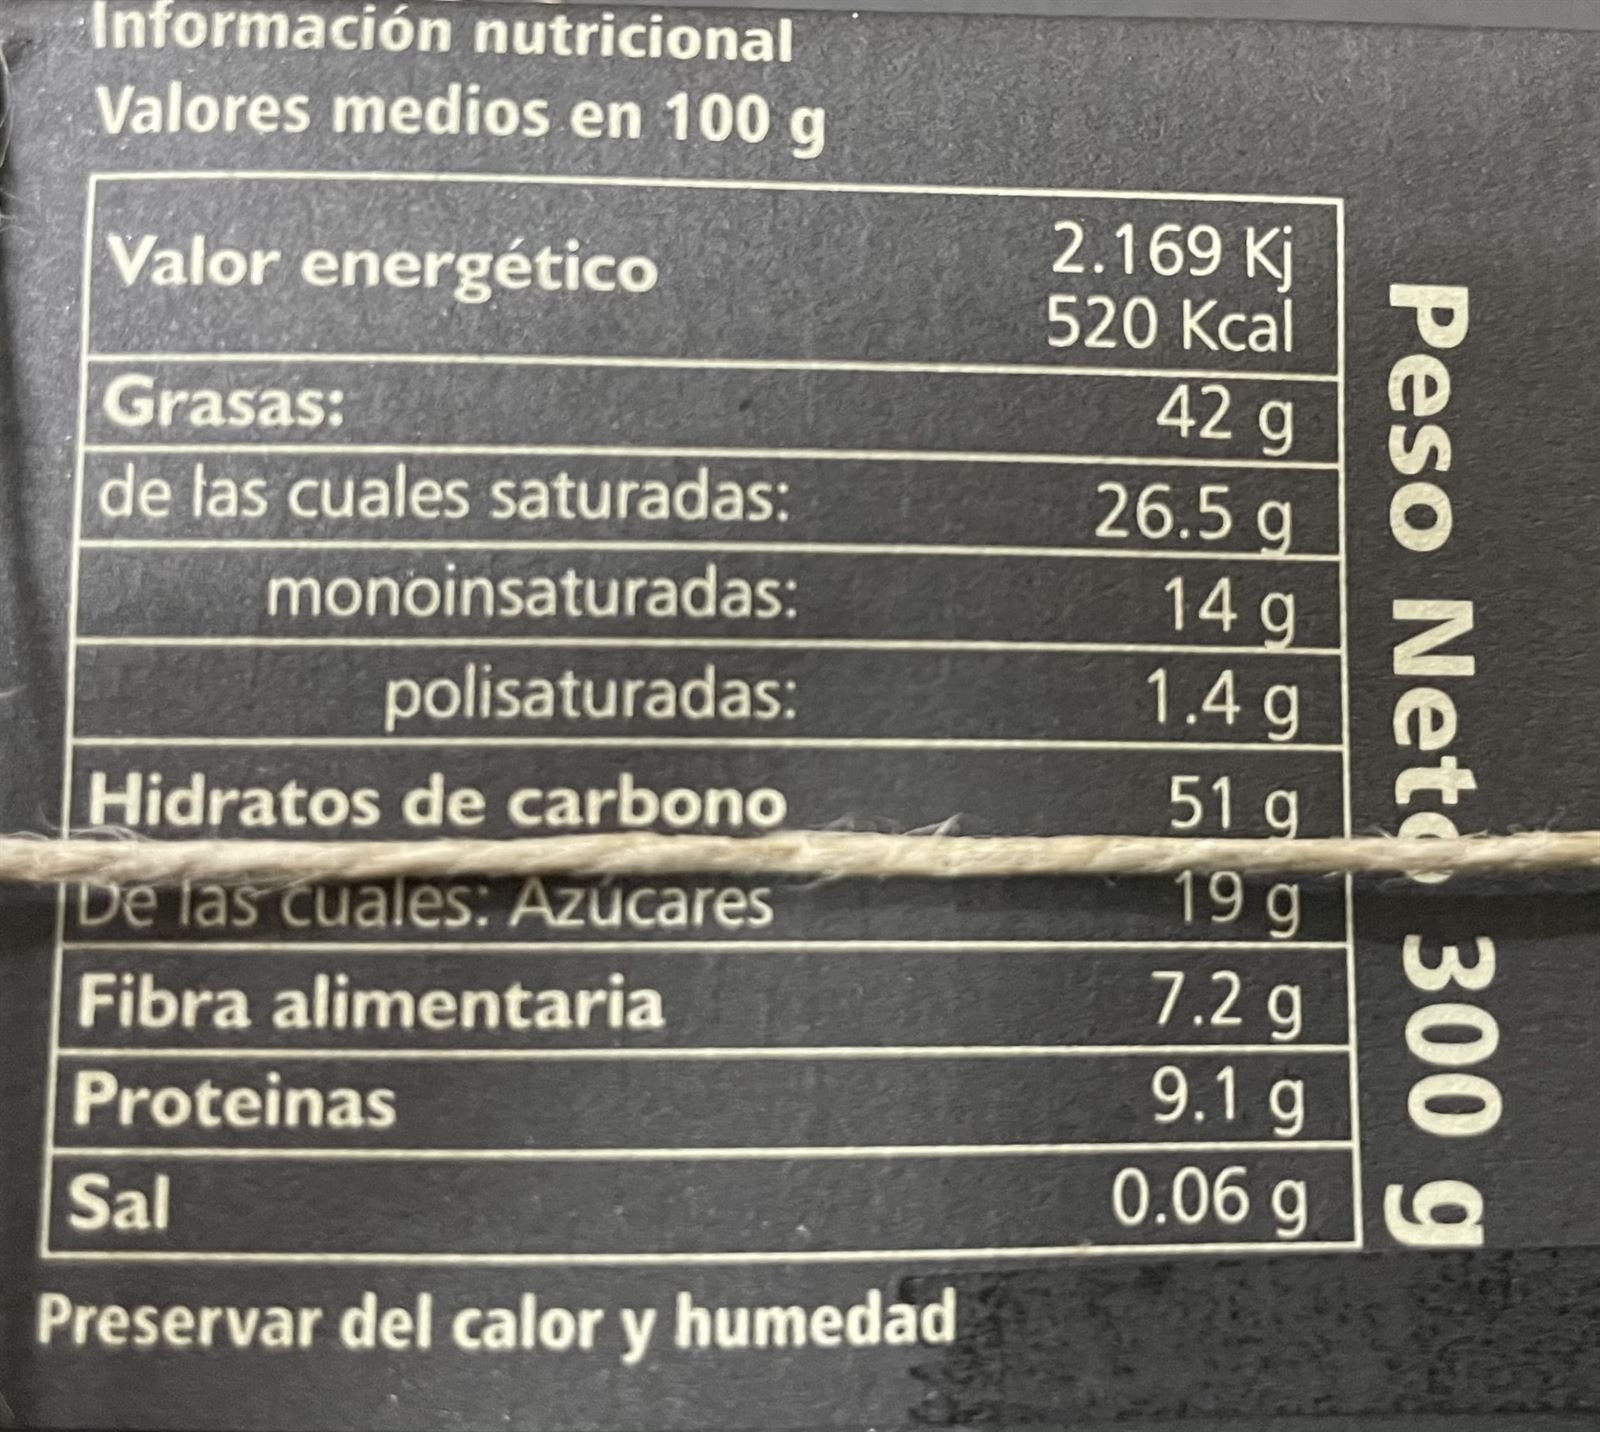 TABLETA CHOCOLATE 85% PAZO DE CORUXO 300grs - Imagen 2